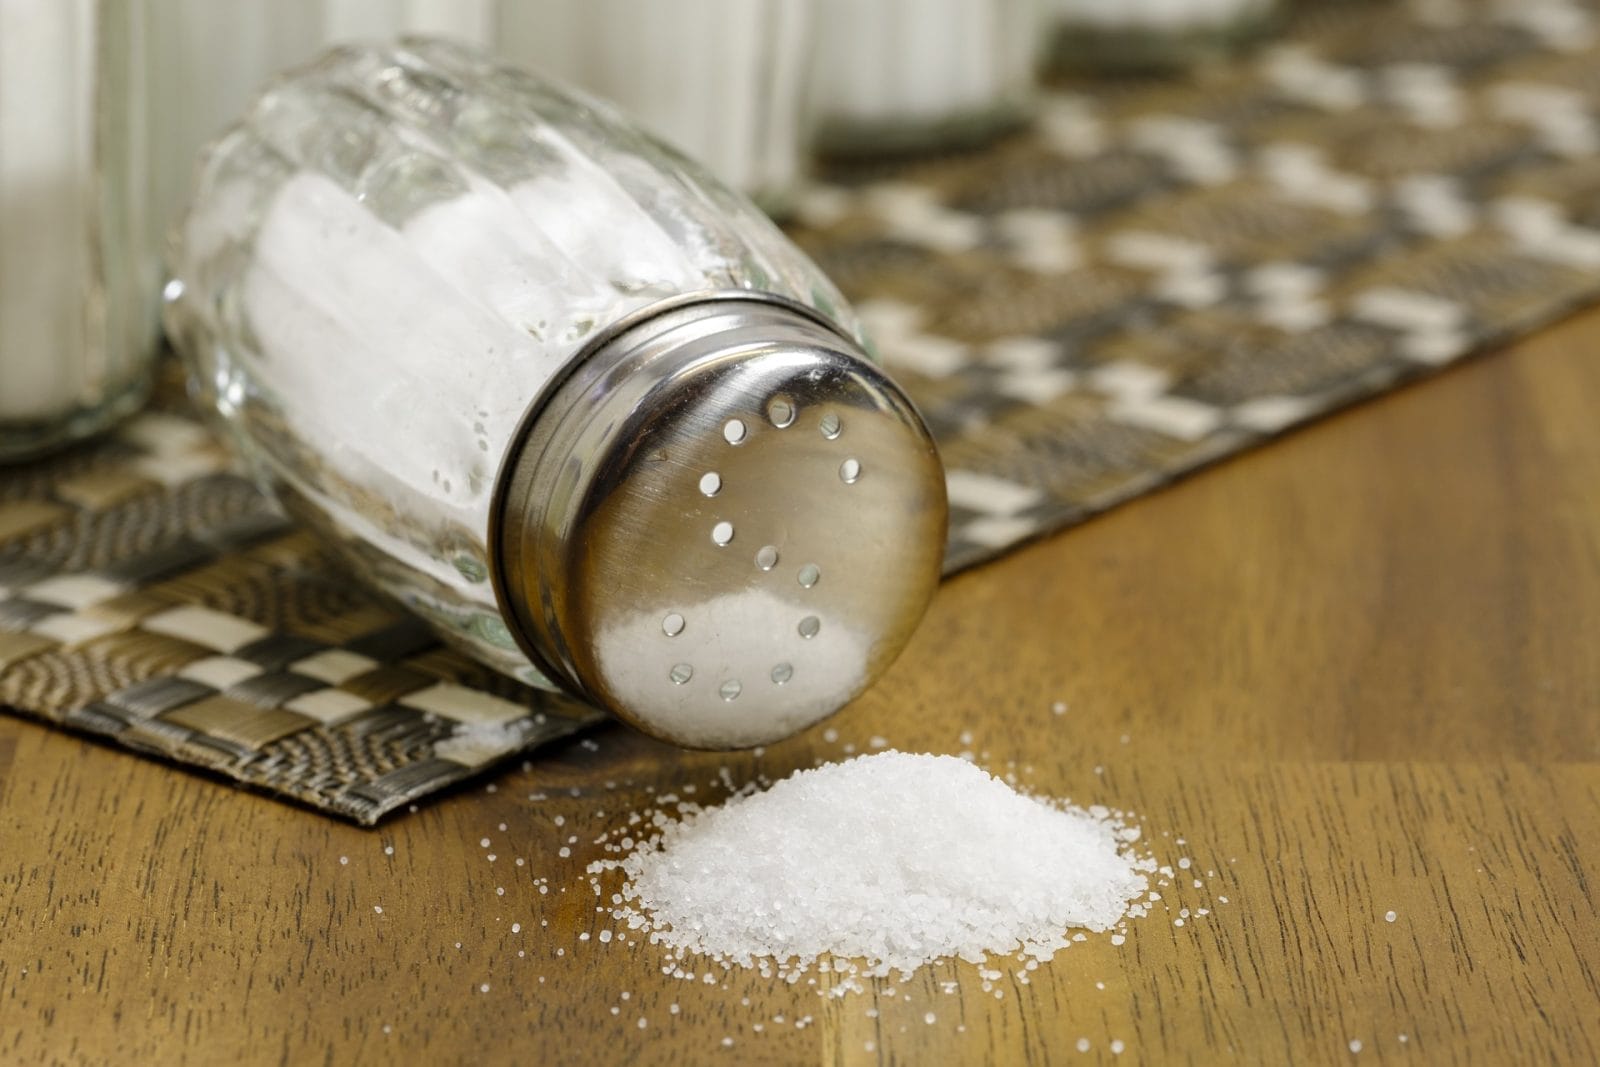 Spilled salt on a table